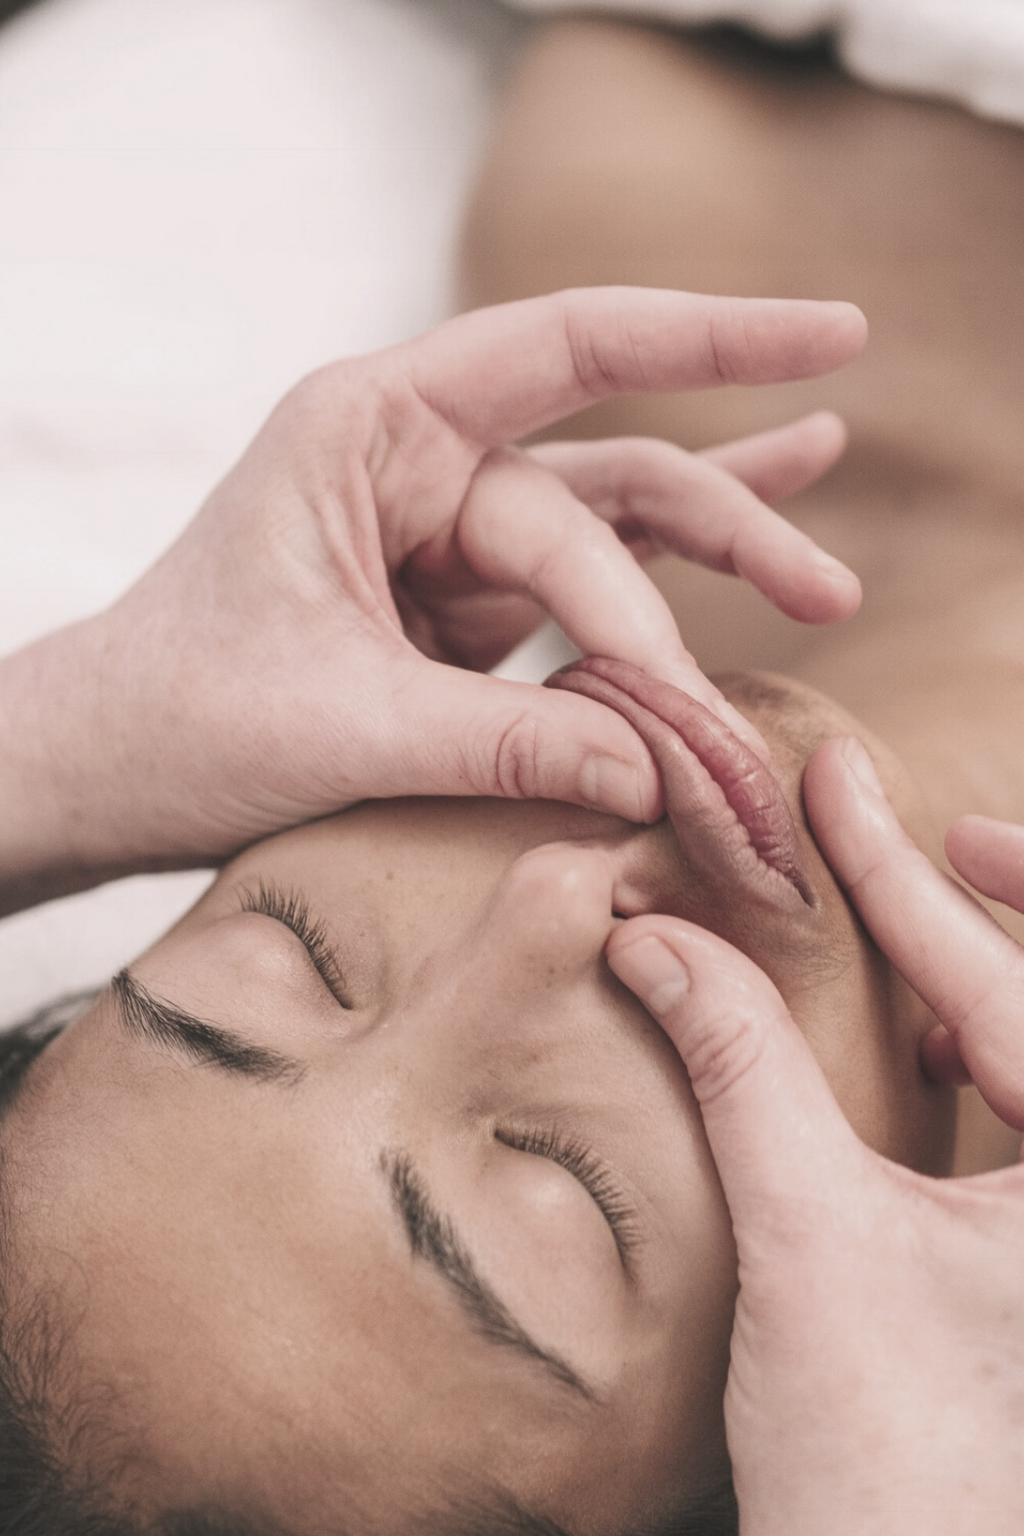 Holistic Facial Massage & Skincare, with Samantha Schneider